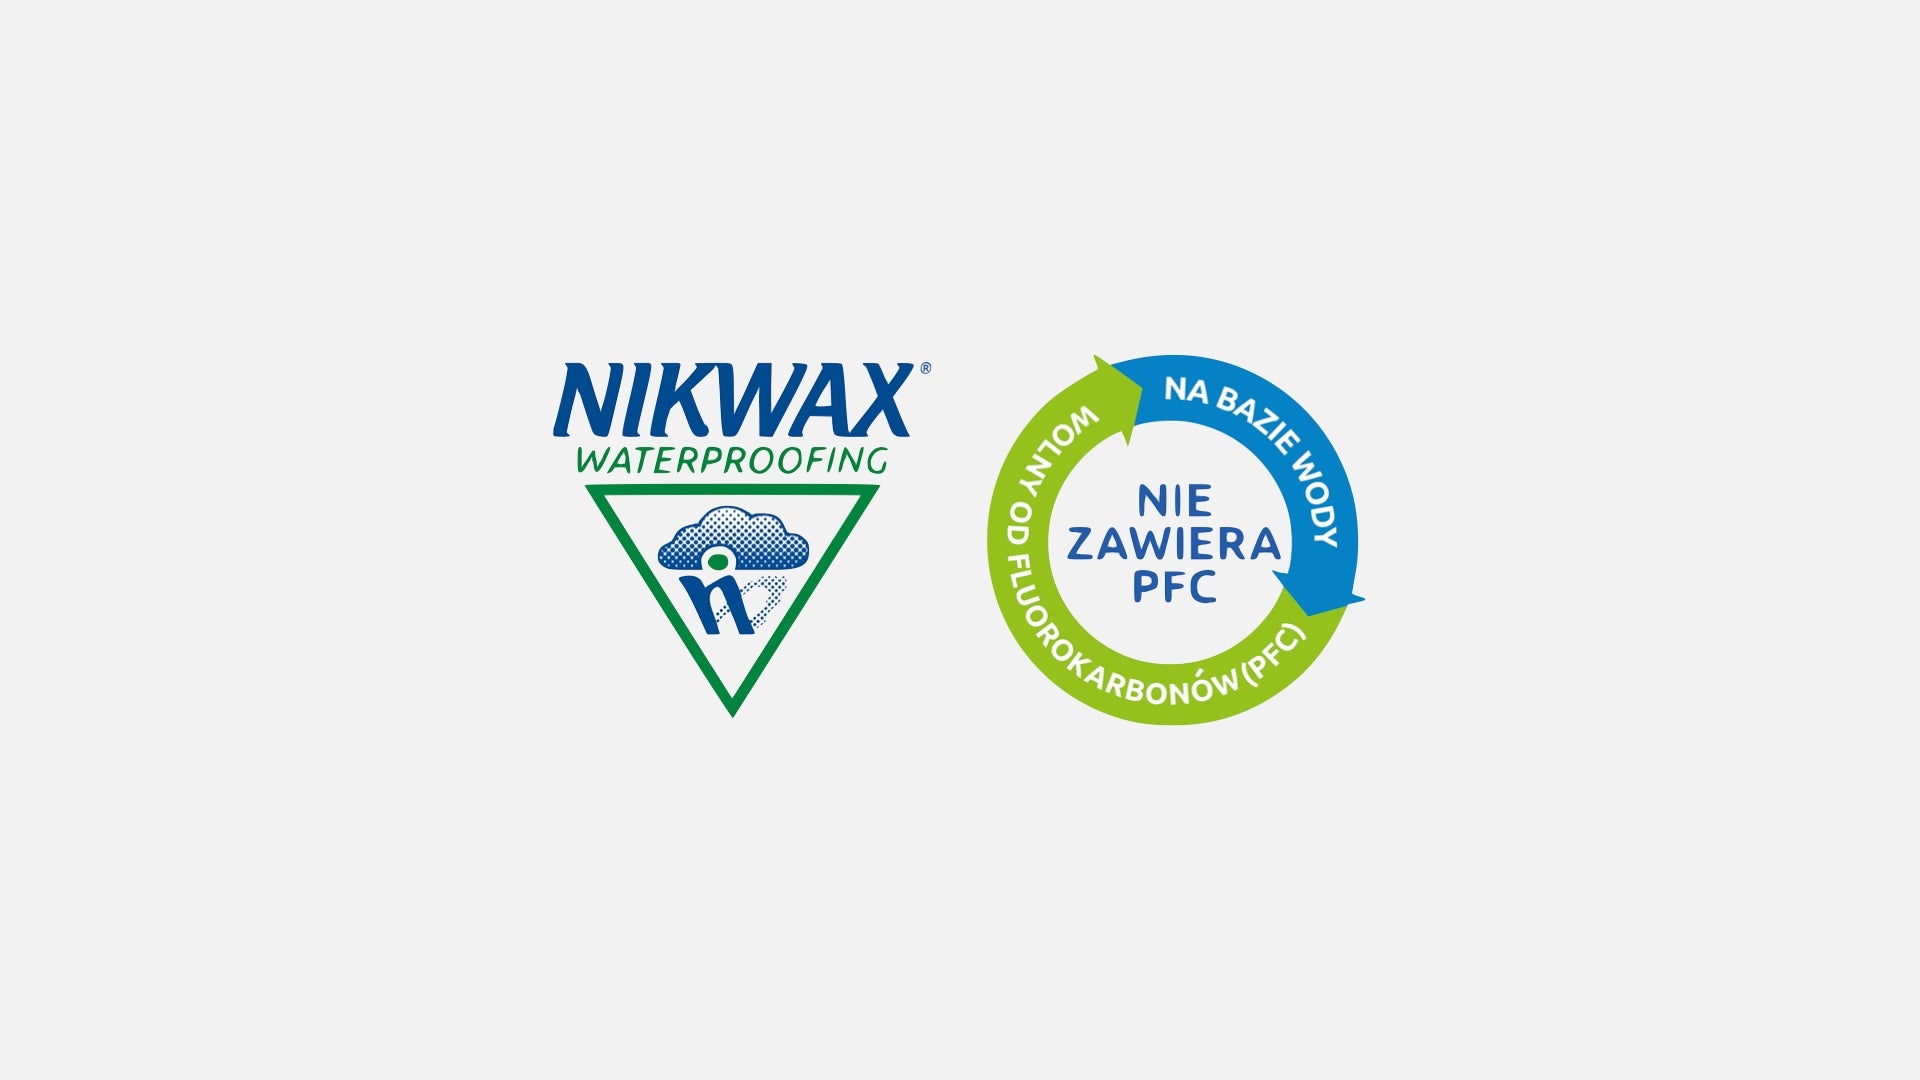 Nikwax - водонепроникний засіб для одягу TX.Direct® Wash-In 1 л